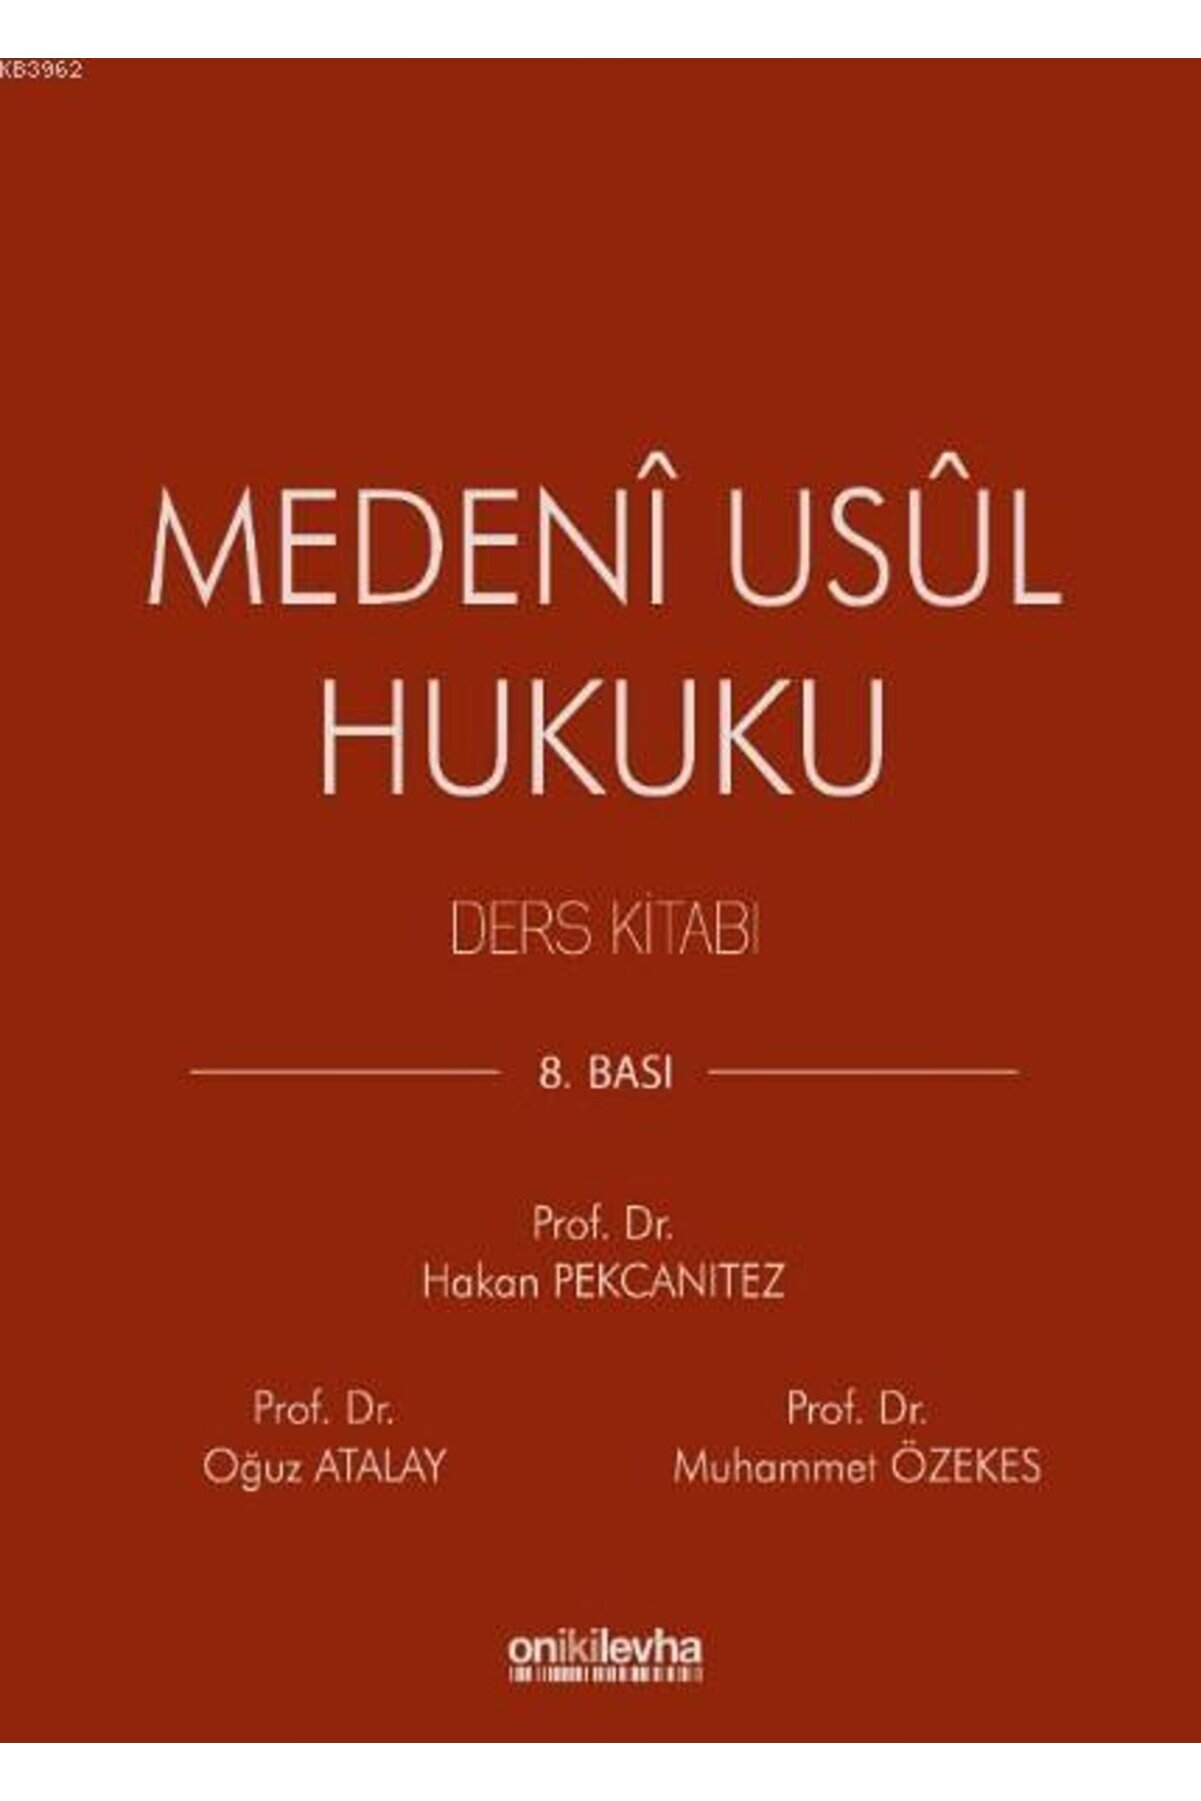 On İki Levha Yayıncılık Medeni Usul Hukuku Ders Kitabı Prof. Dr. Oğuz Atalay, Prof. Dr. Hakan Pekcanıtez 2020